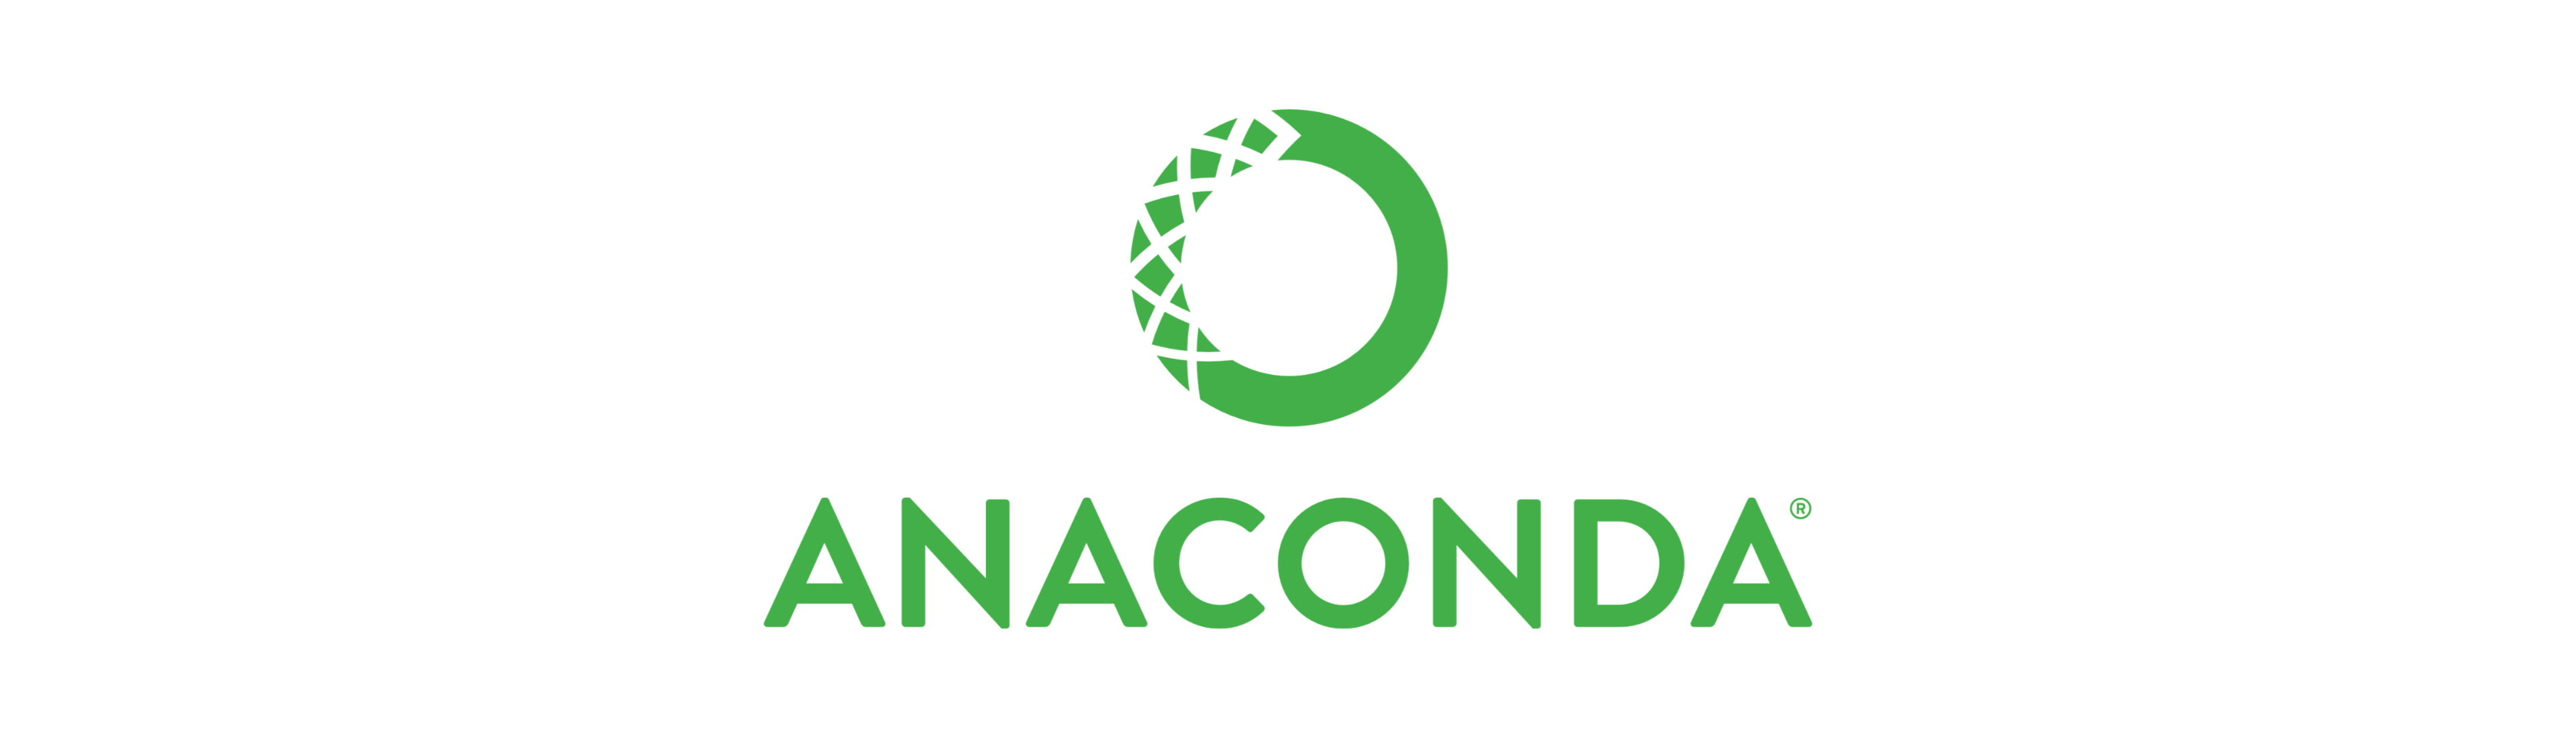 anaconda-logo